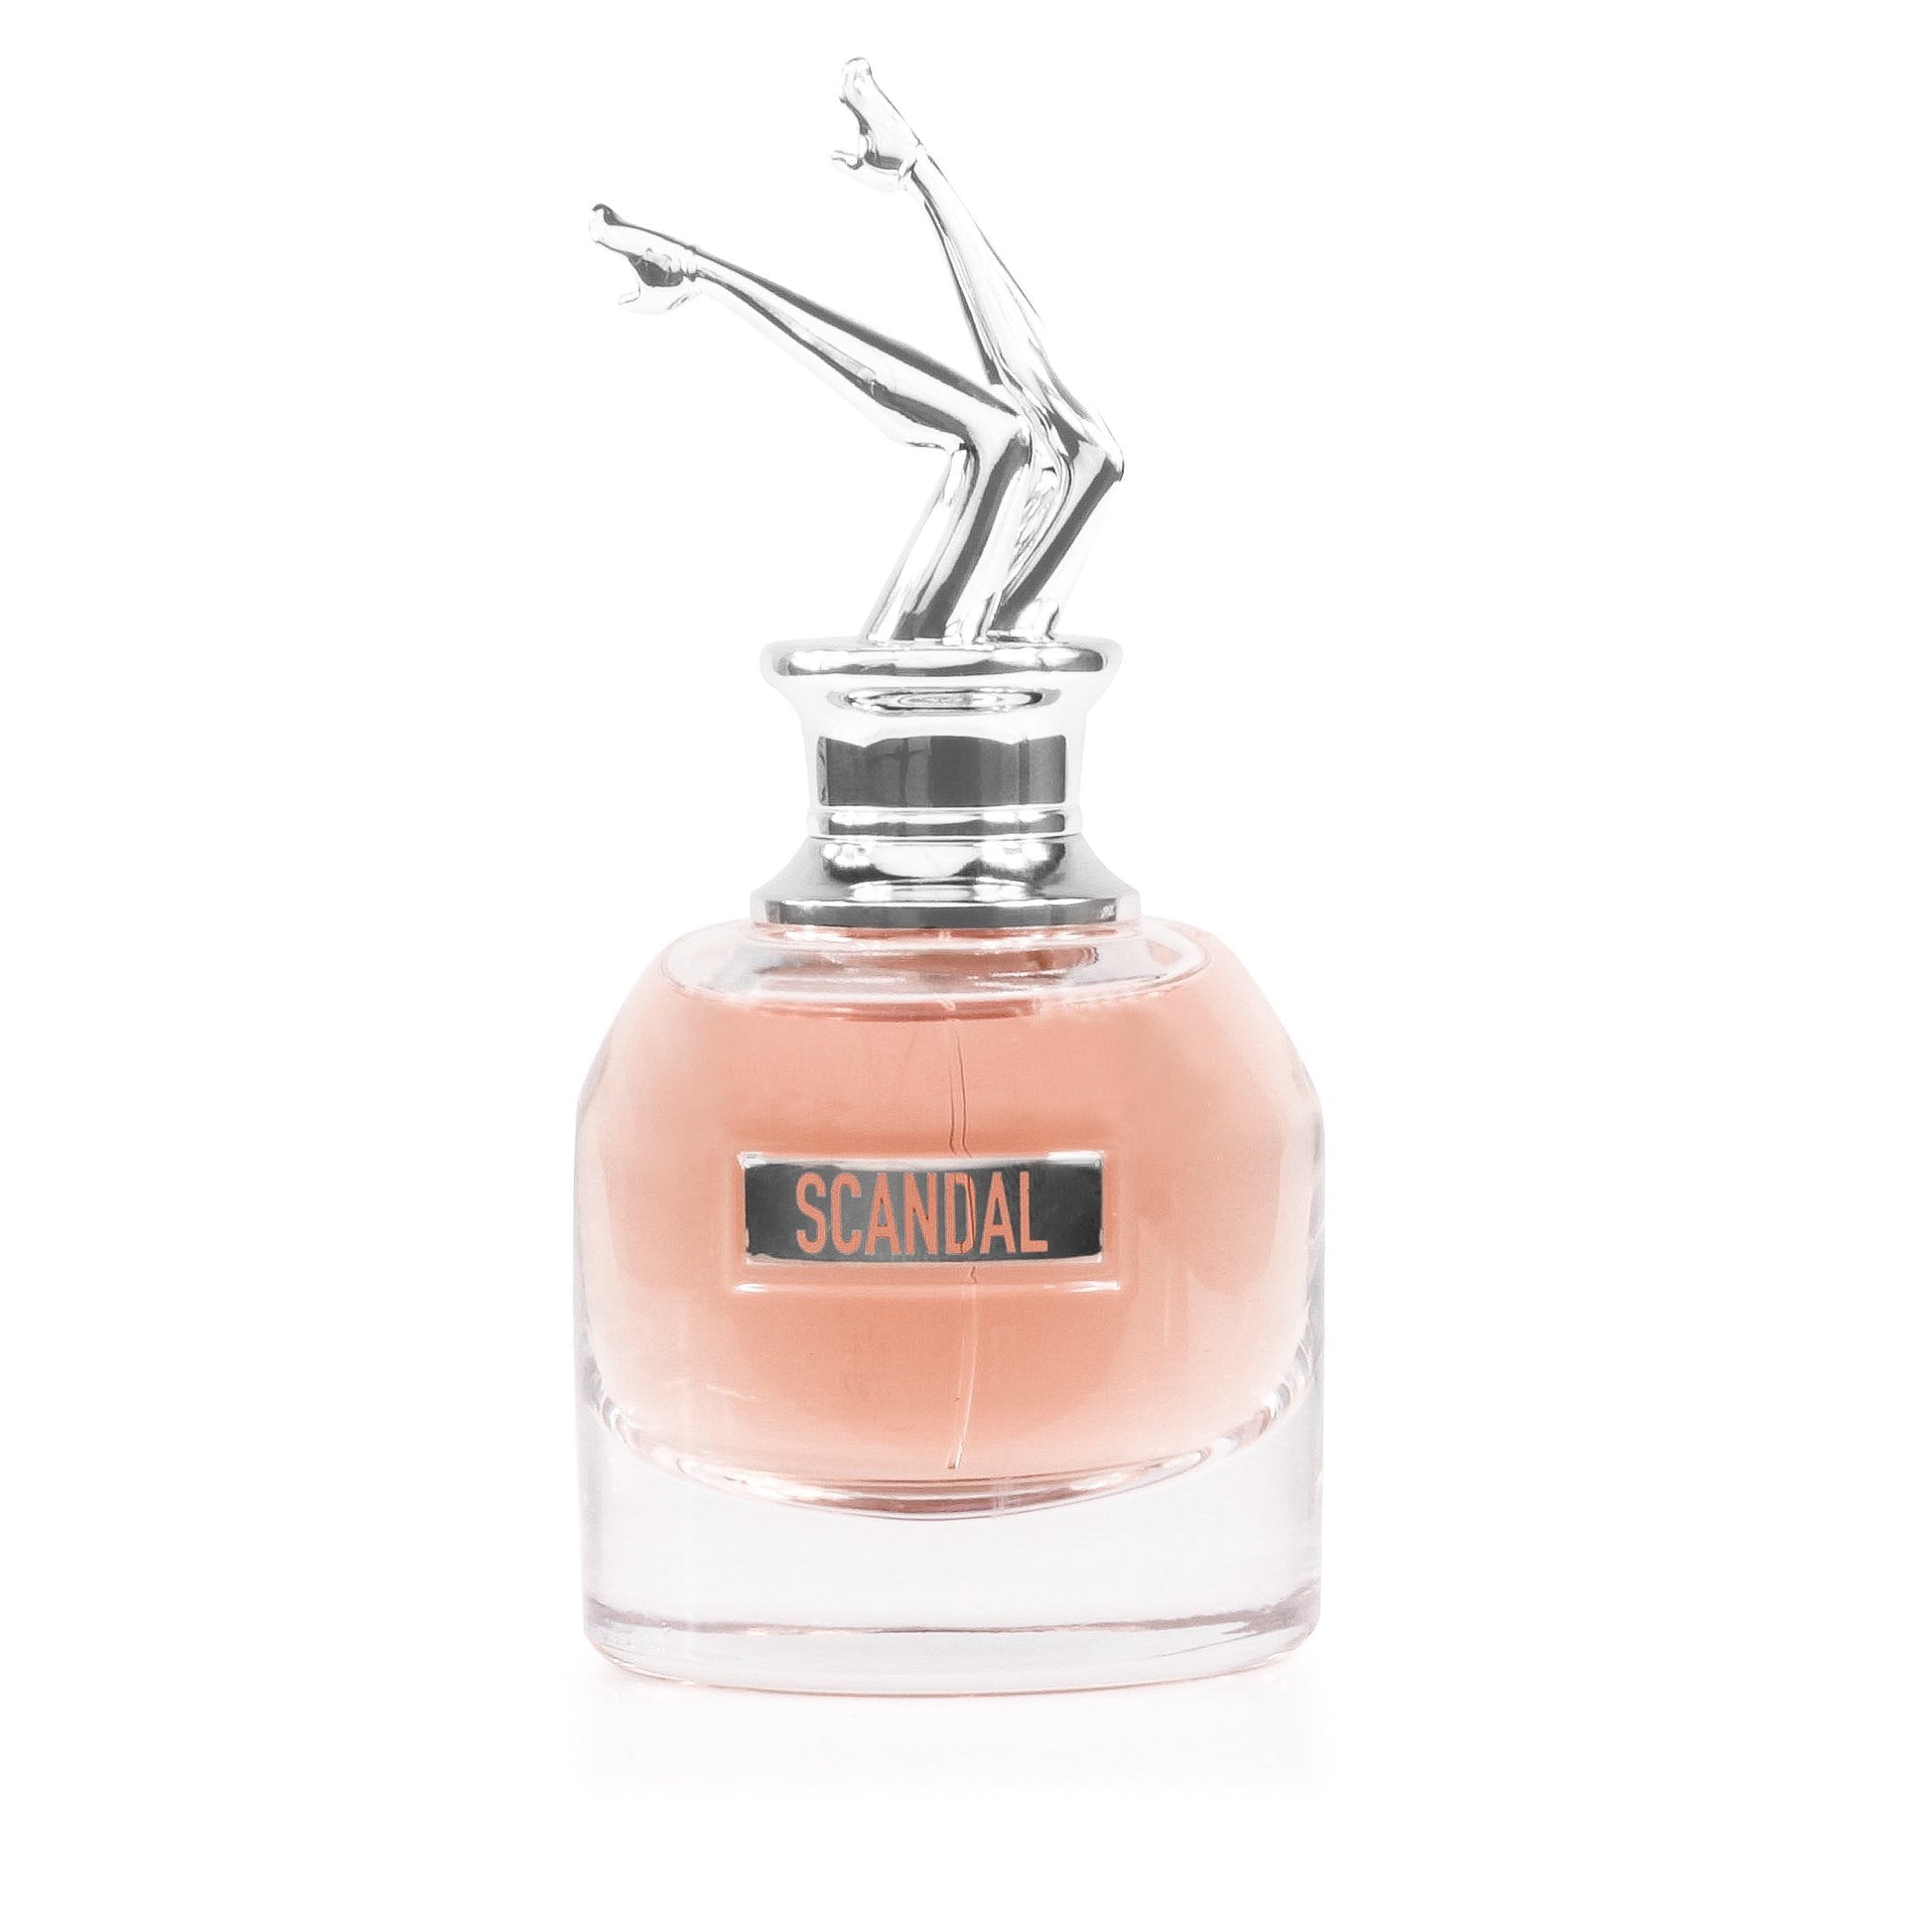 Scandal Eau de Parfum Spray for Women by Jean Paul Gaultier 1.7 oz. Click to open in modal